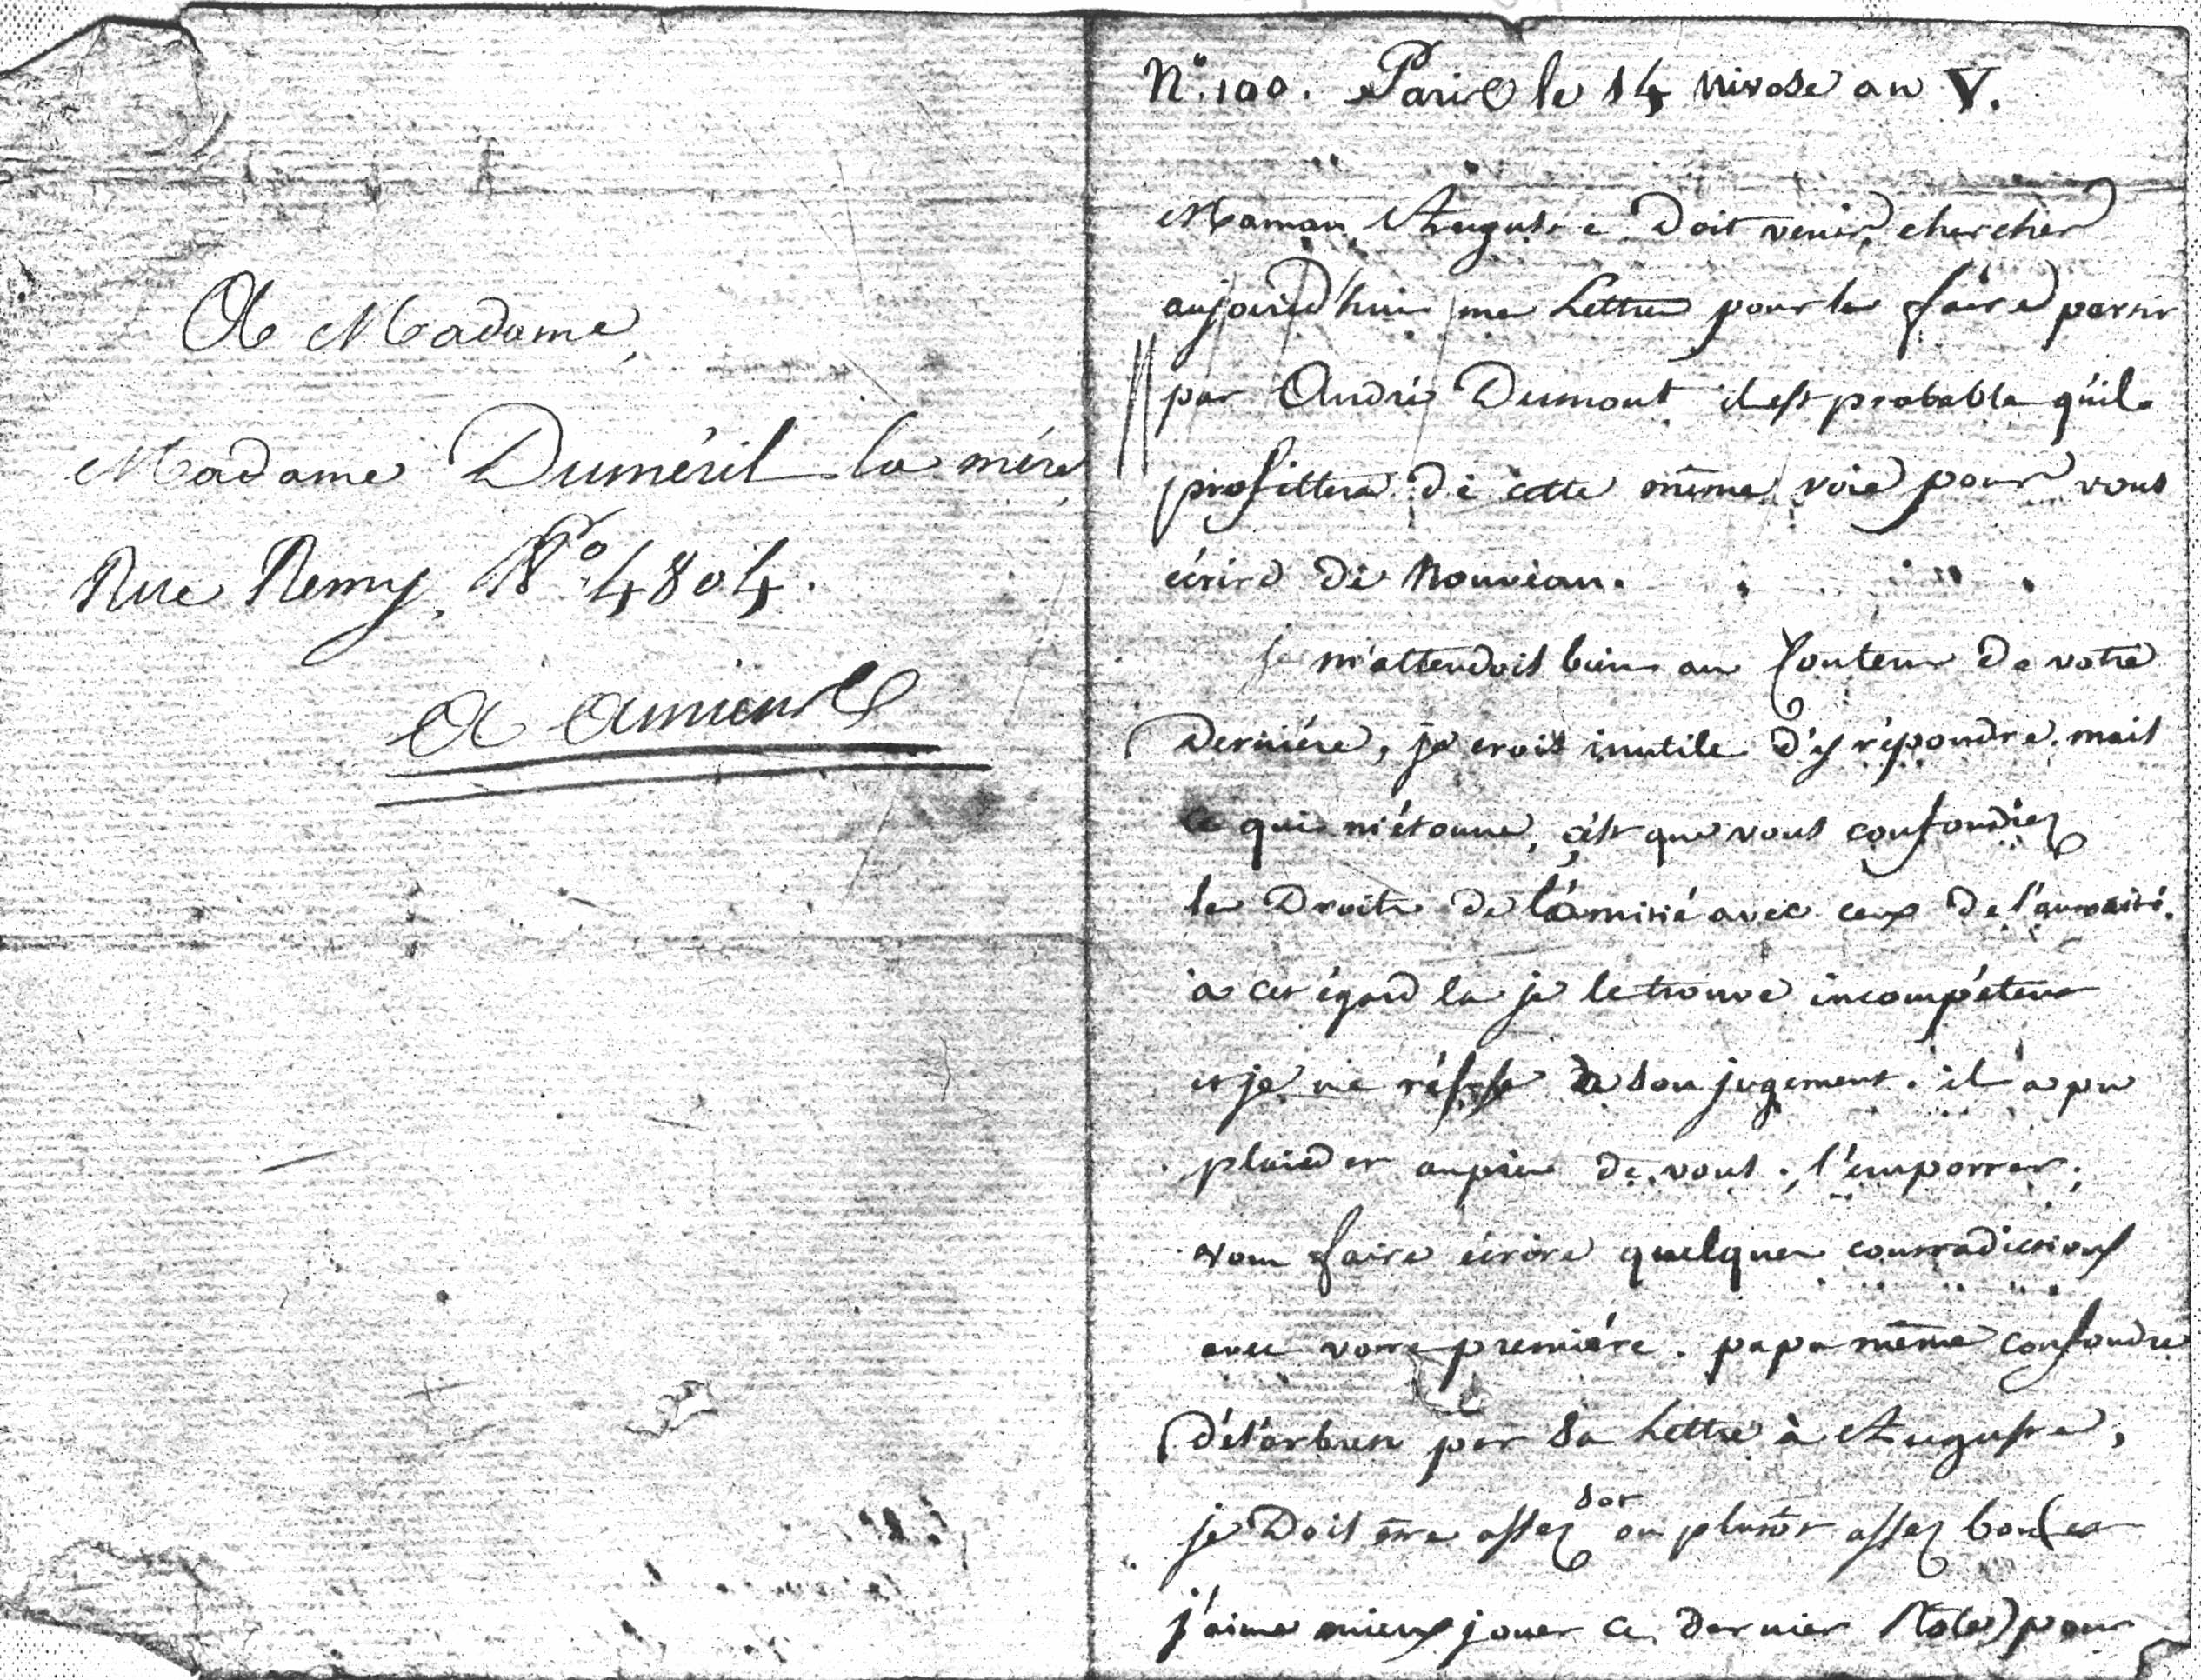 Mardi 3 janvier 1797, 14 nivôse an V